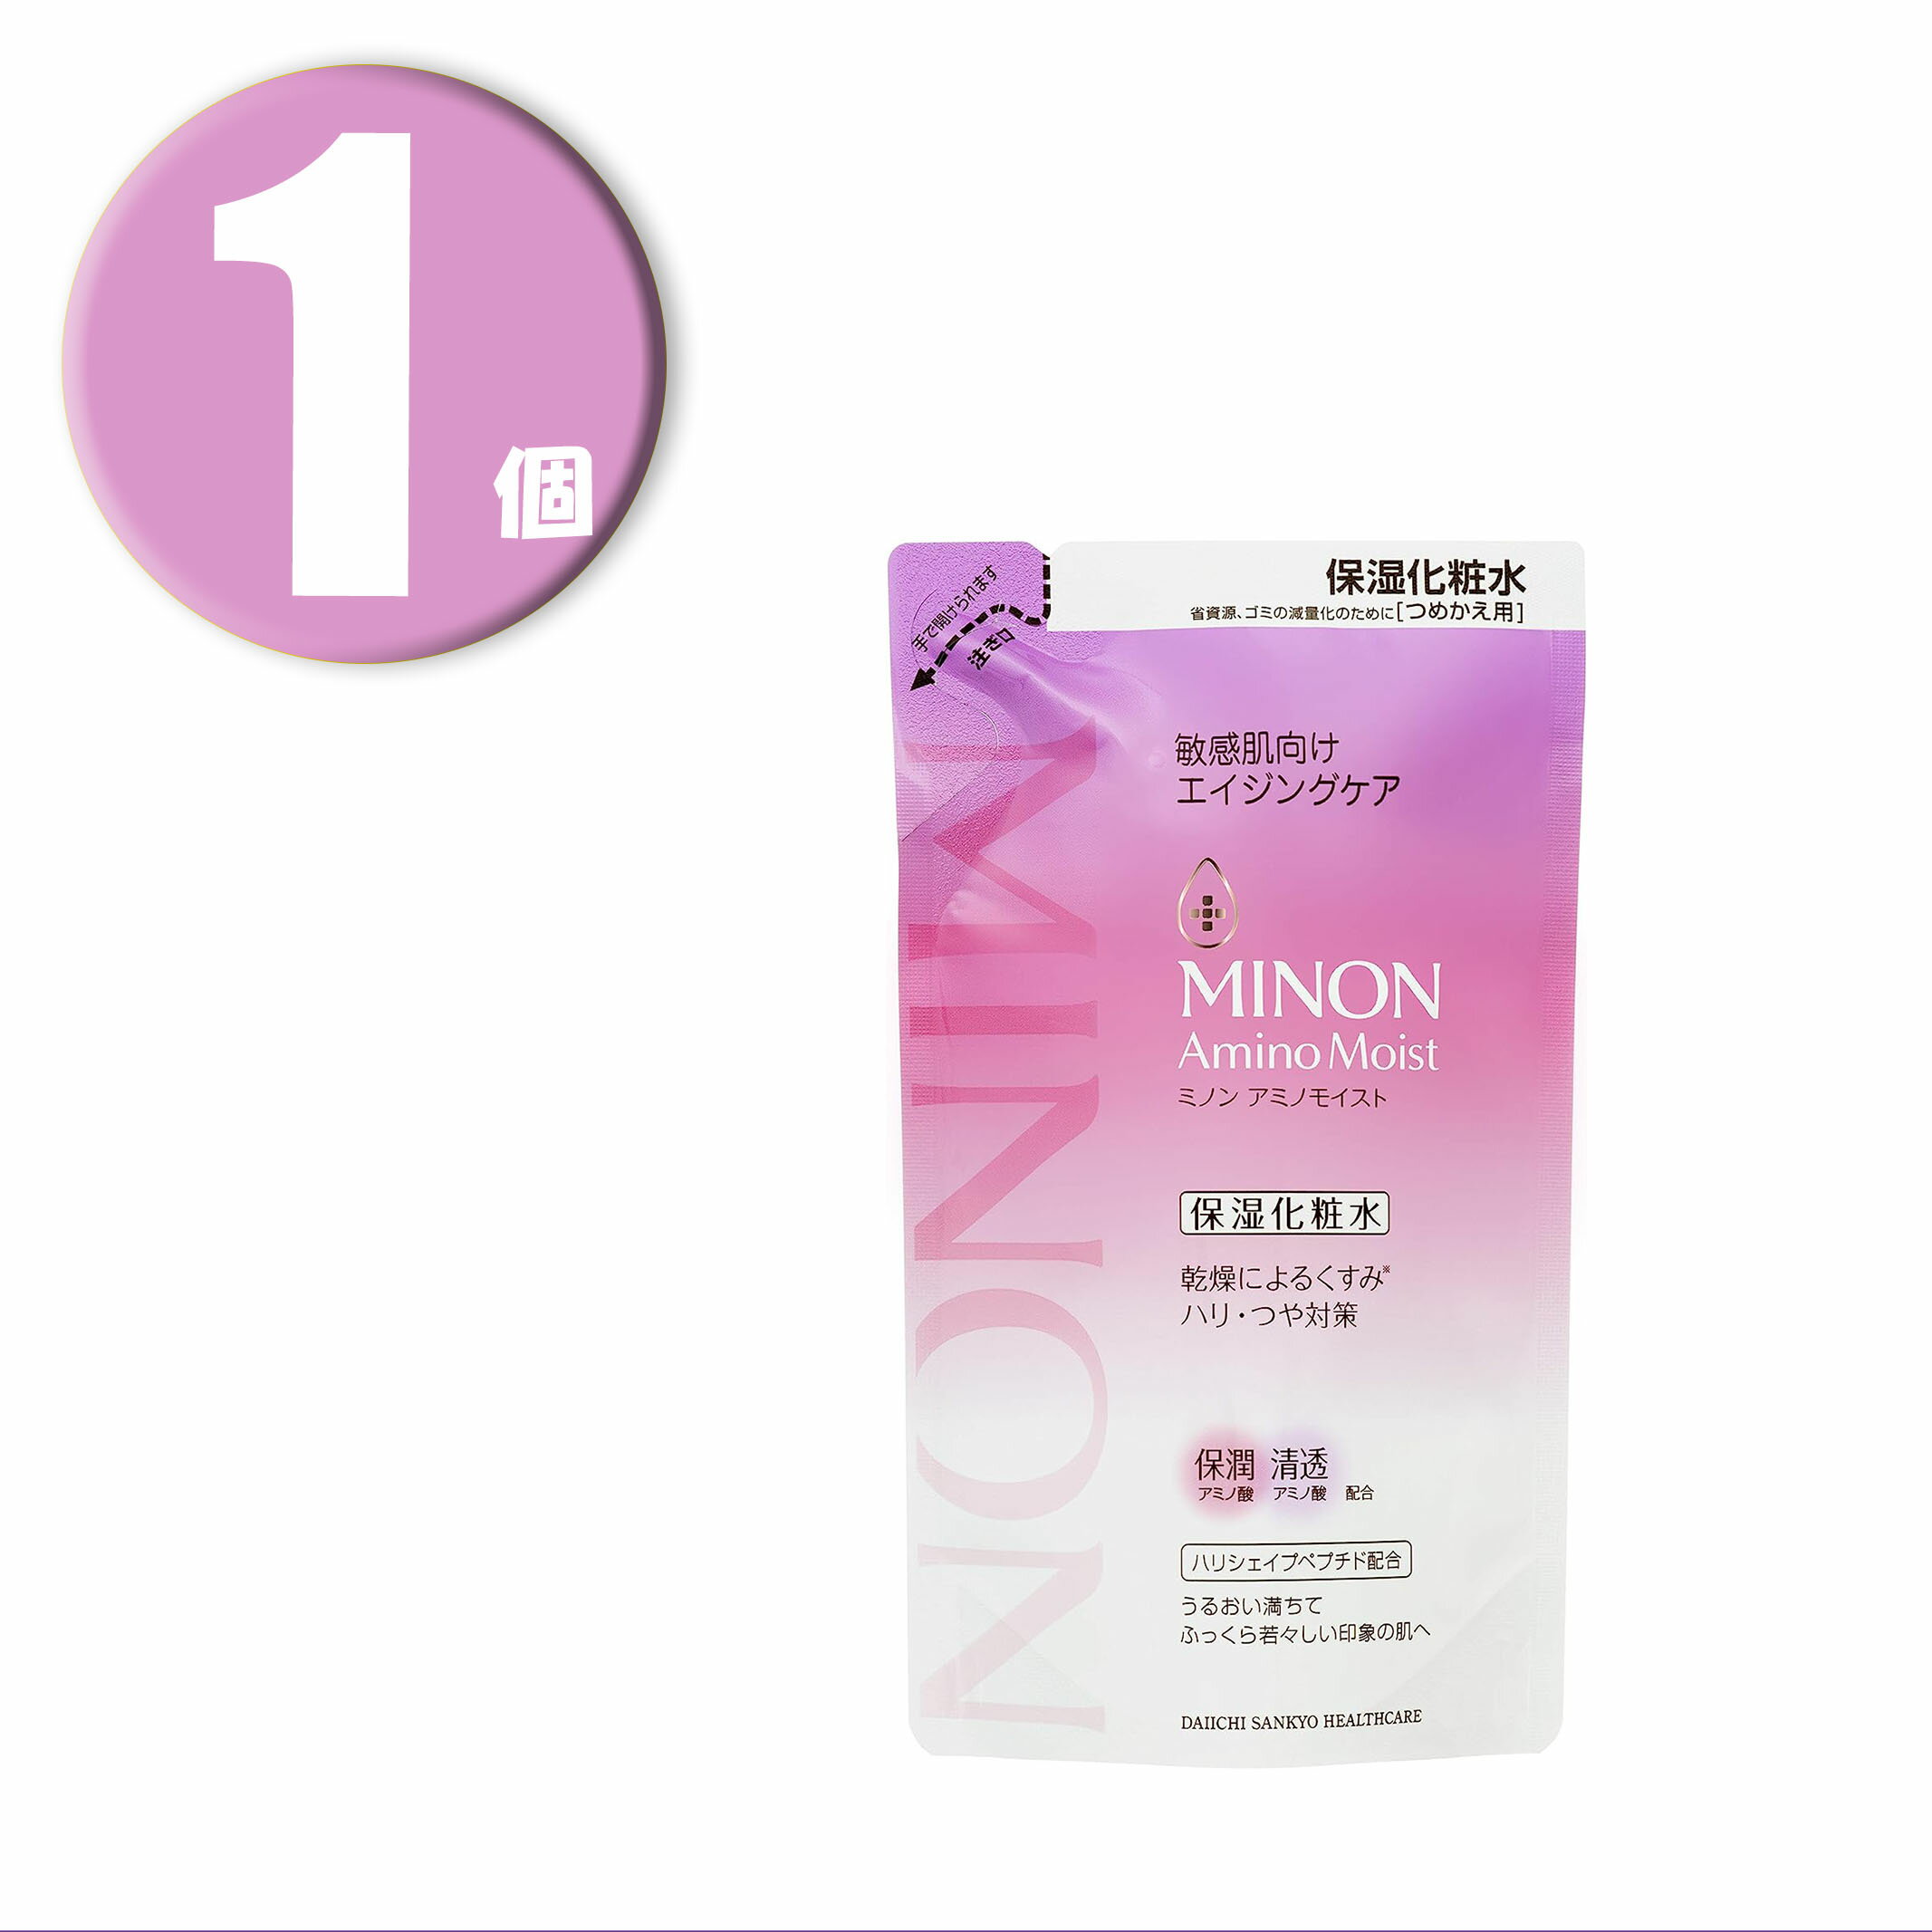 (1個) MINON ミノン アミノモイスト エイジングケア ローション つめかえ用 化粧水 130mL Amino Moist